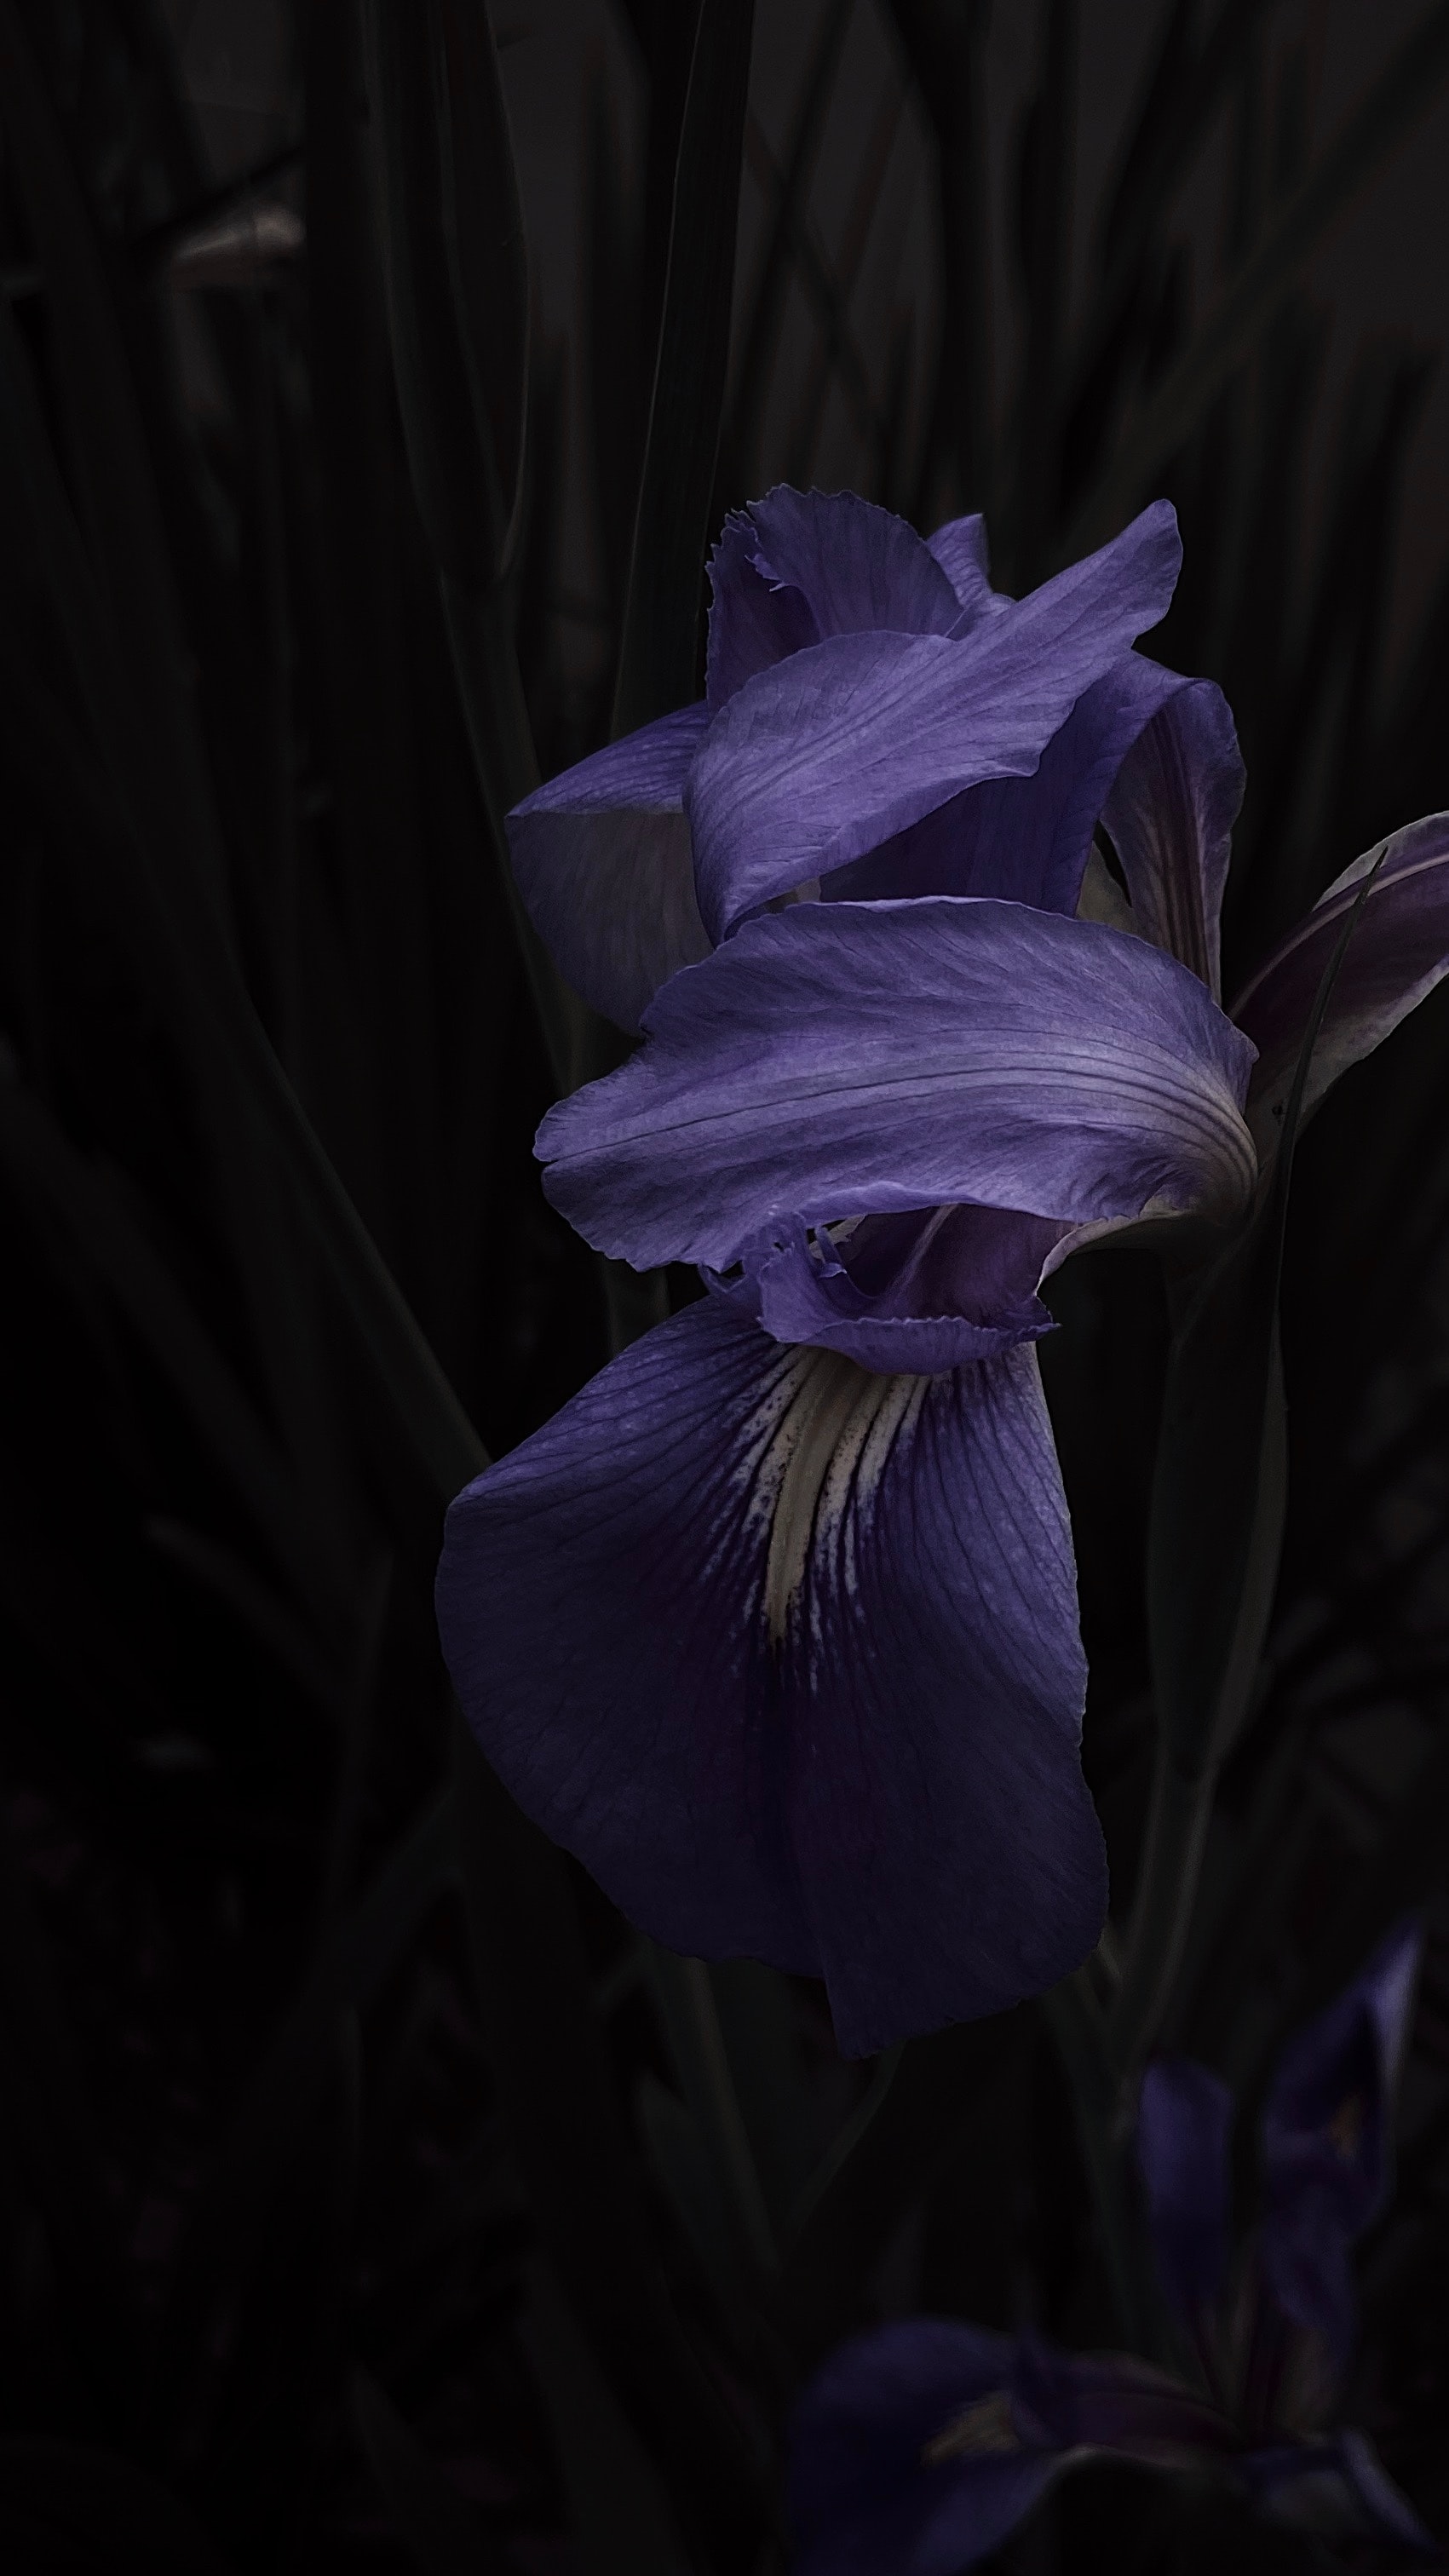 Sweet Iris